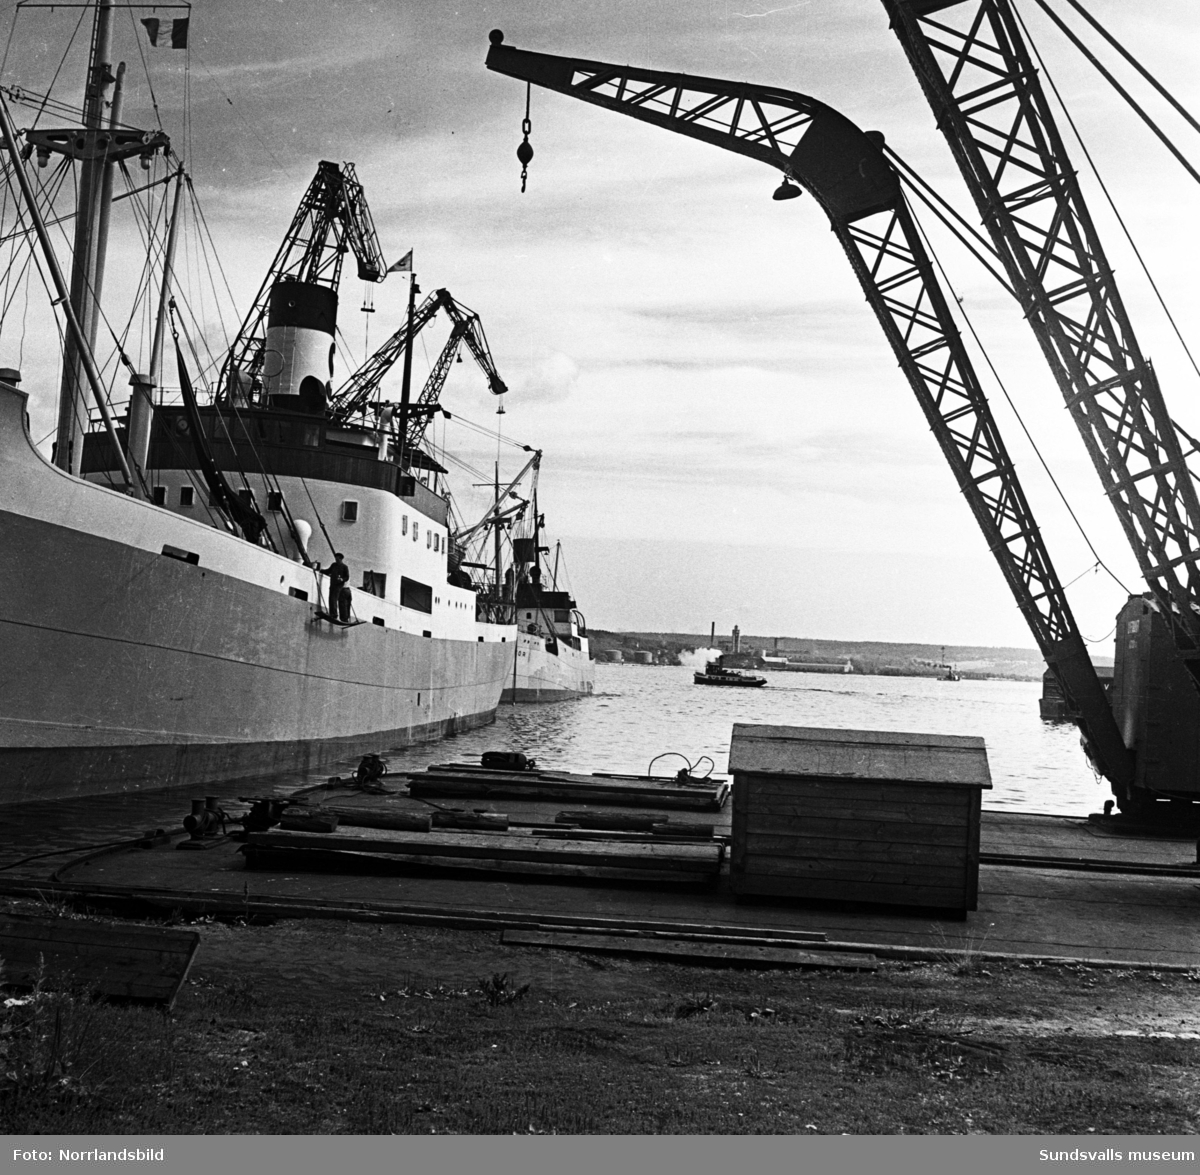 Underhållsarbete på fartyget Berkel i Sundsvalls hamn.